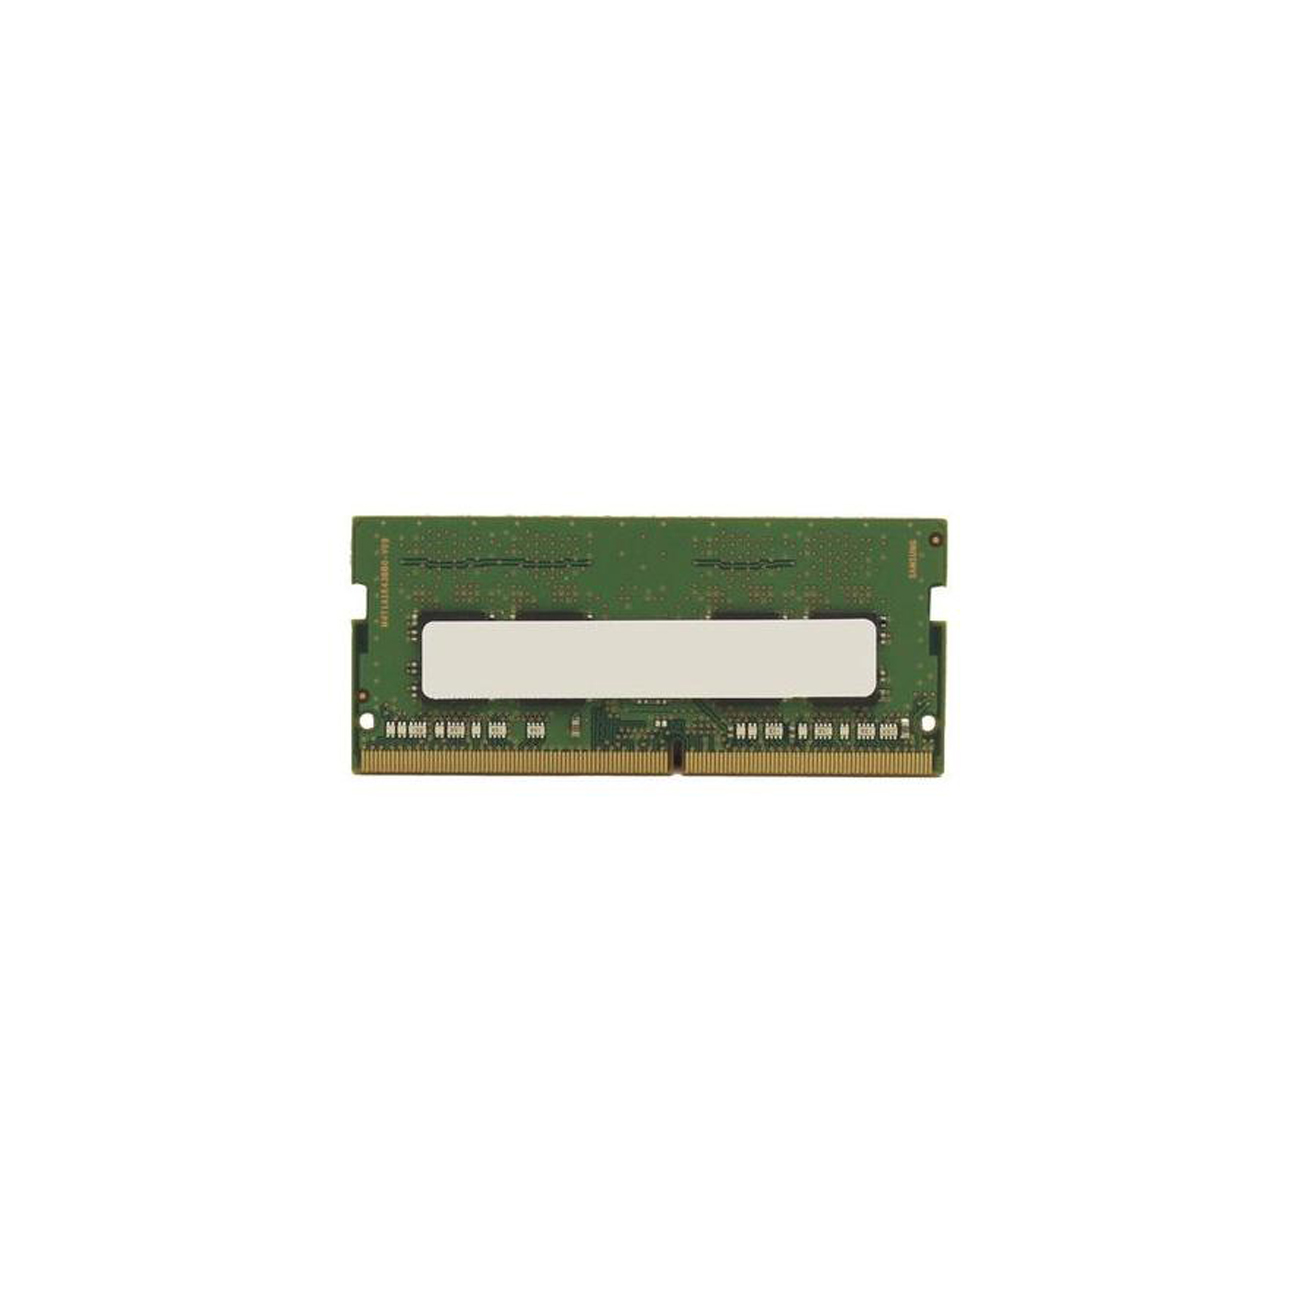 Fujitsu NOT 8 GB DDR4 2133 SO-DIMM E557 E547 - S26391-F1512-L800